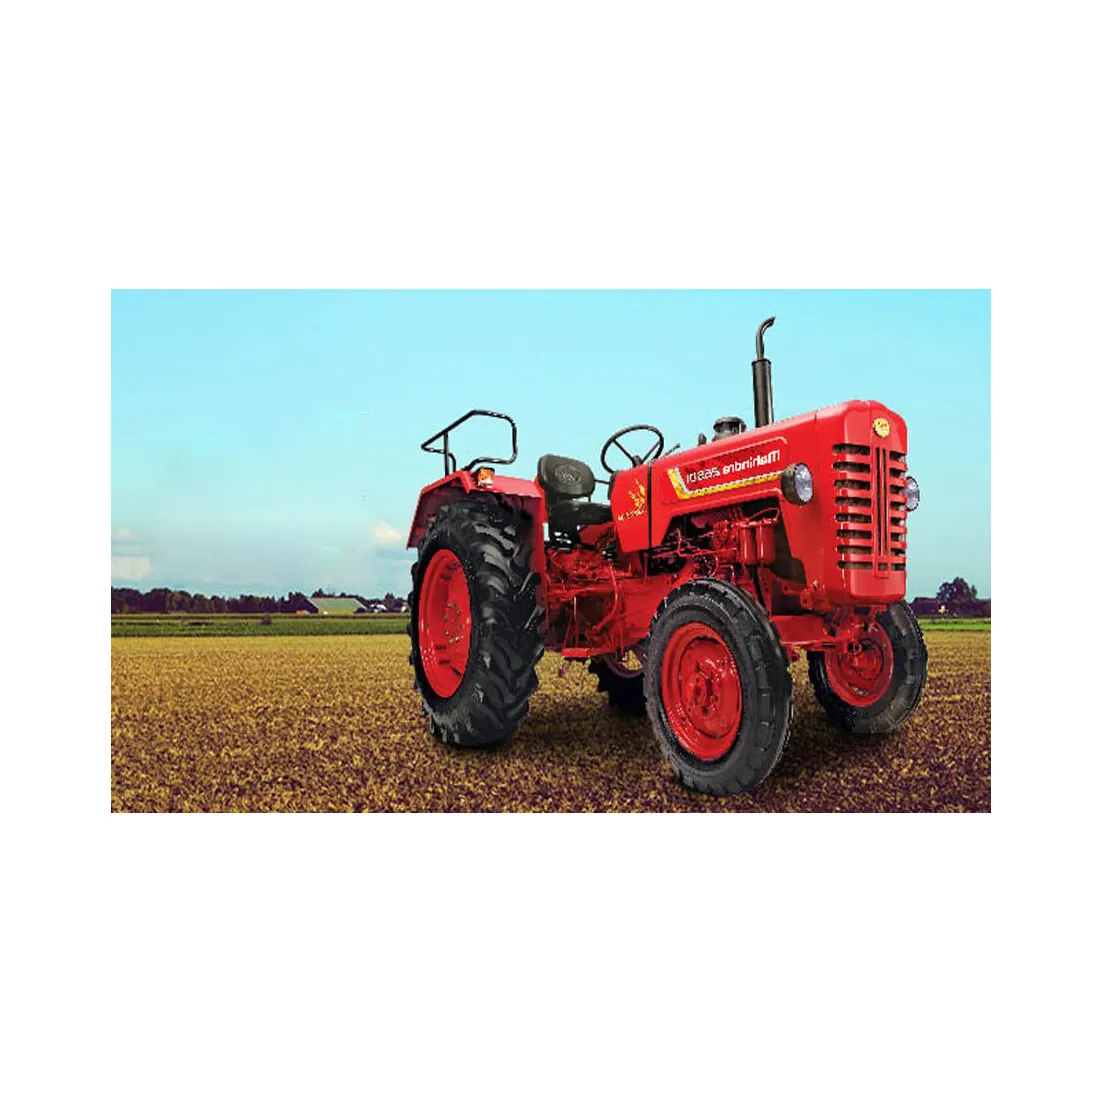 Tractor agrícola Mahindra 265 Di, respetuoso con el medio ambiente, precio de venta